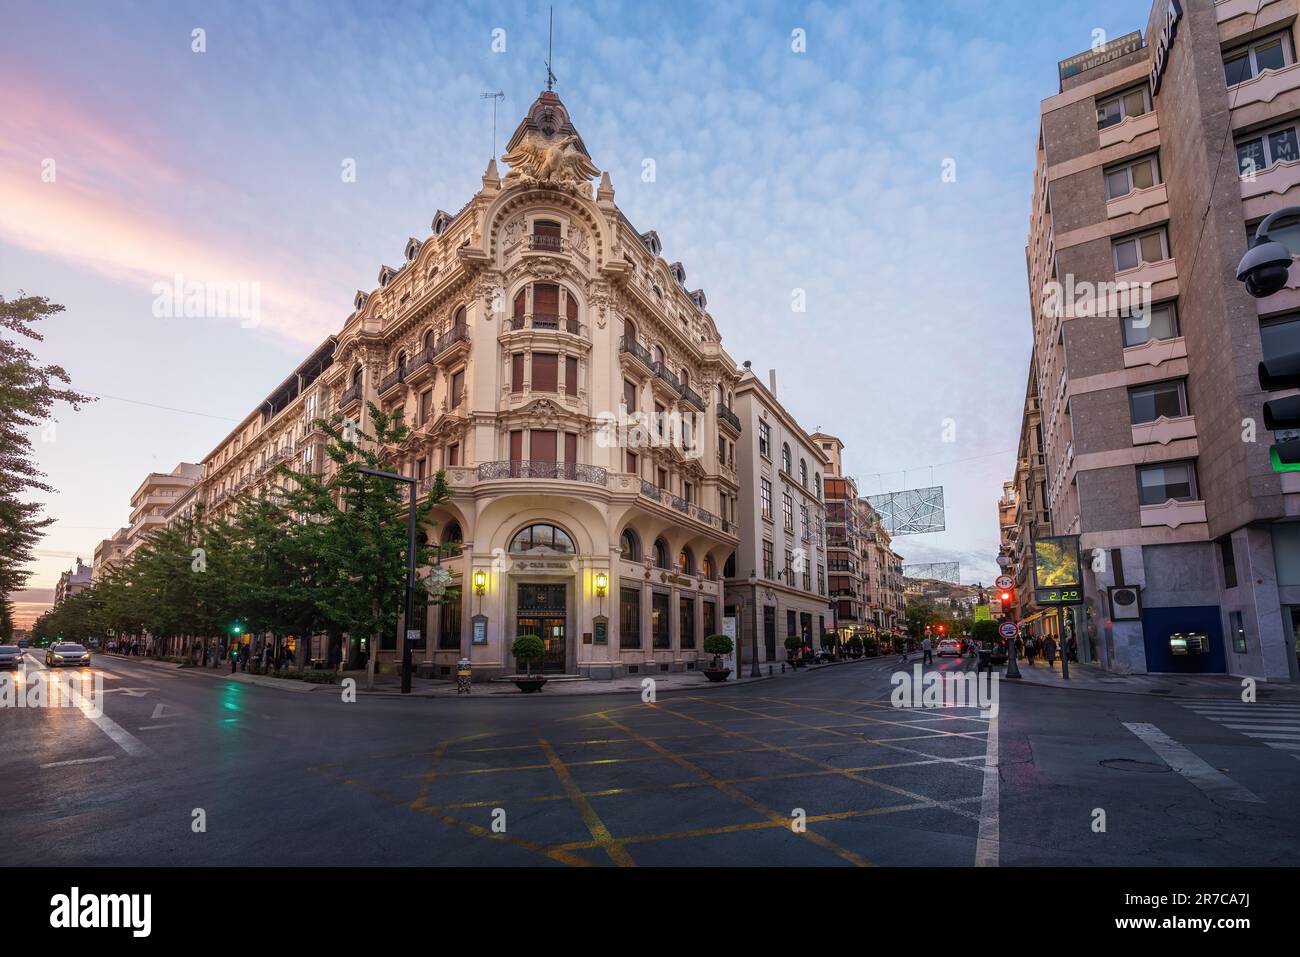 Edificio Banco Central Building and Gran Via de Colon Street at sunset - Granada, Andalusia, Spain Stock Photo